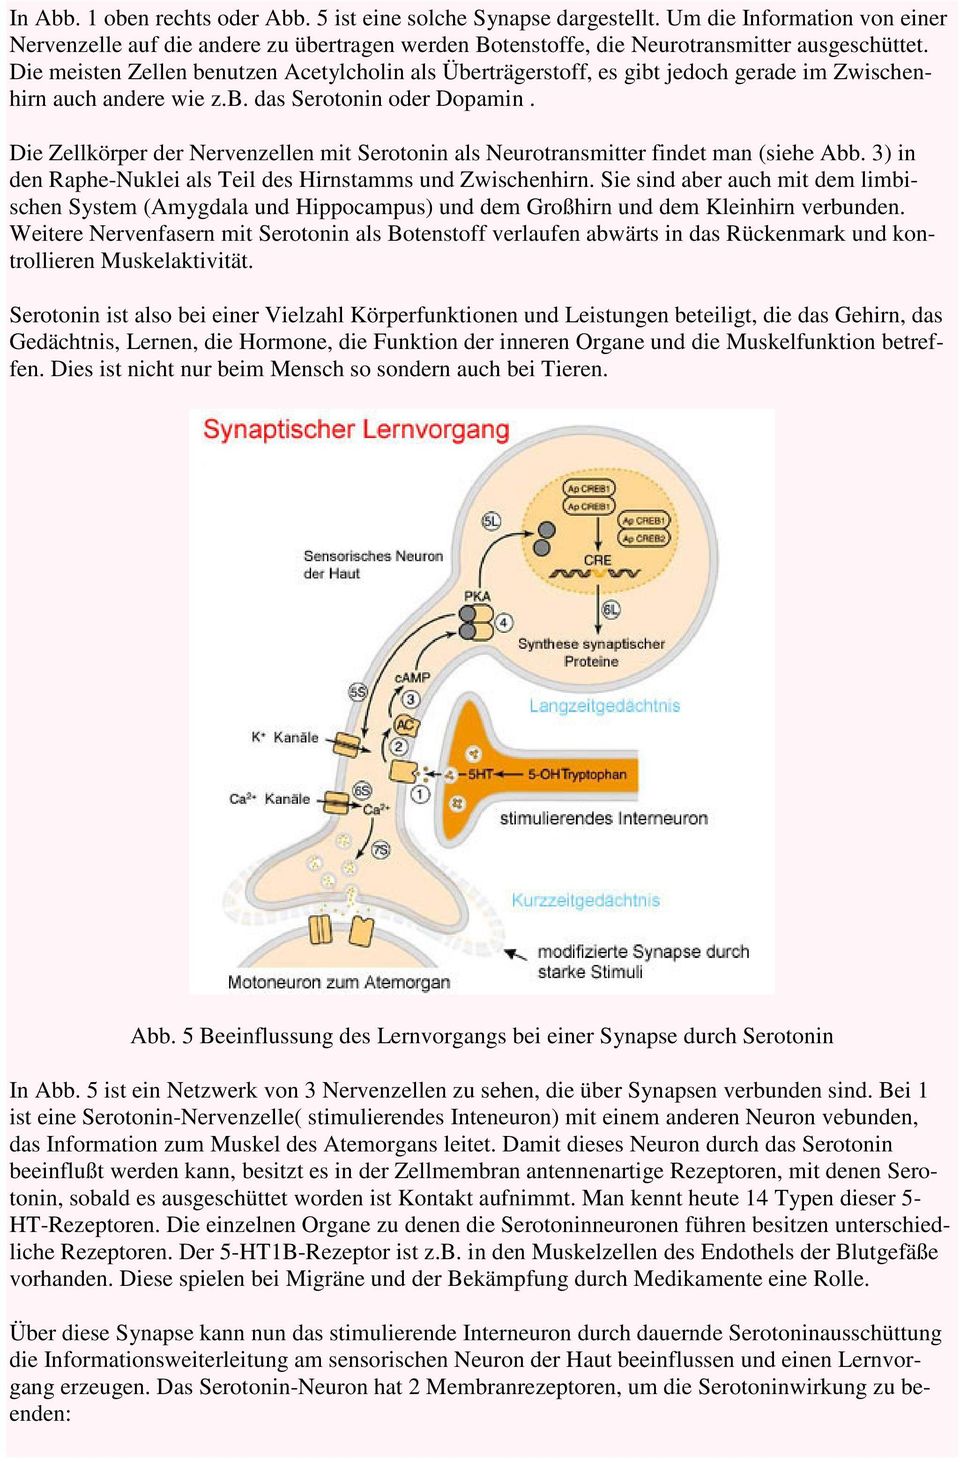 Die Zellkörper der Nervenzellen mit Serotonin als Neurotransmitter findet man (siehe Abb. 3) in den Raphe-Nuklei als Teil des Hirnstamms und Zwischenhirn.